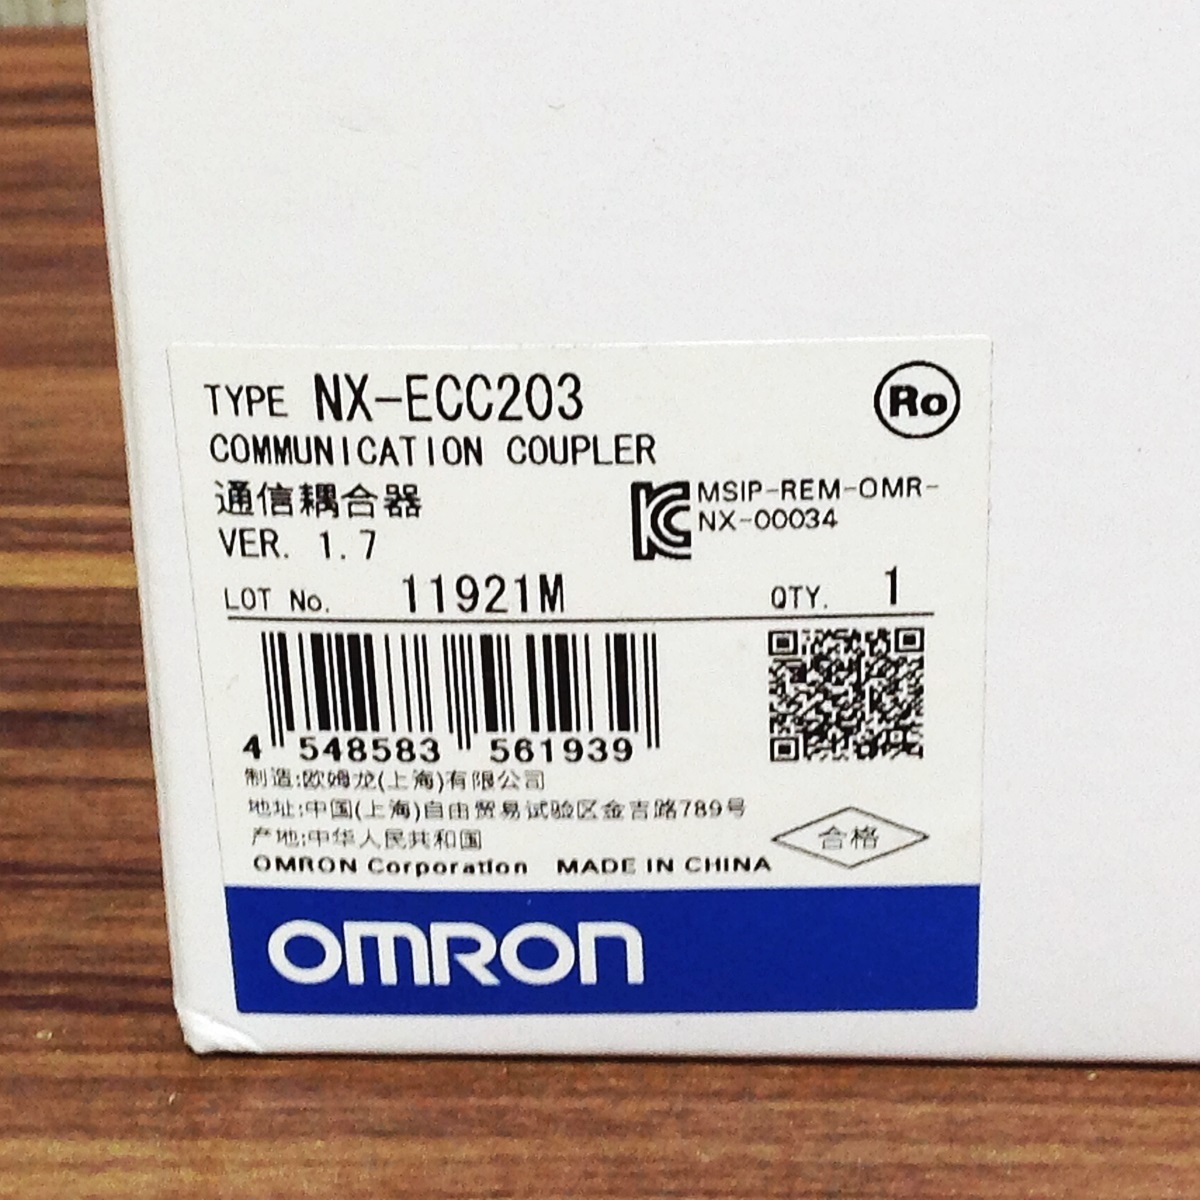 【TH-7063】新品未使用品 OMRON オムロン コミュニケーションカプラー NX-ECC203